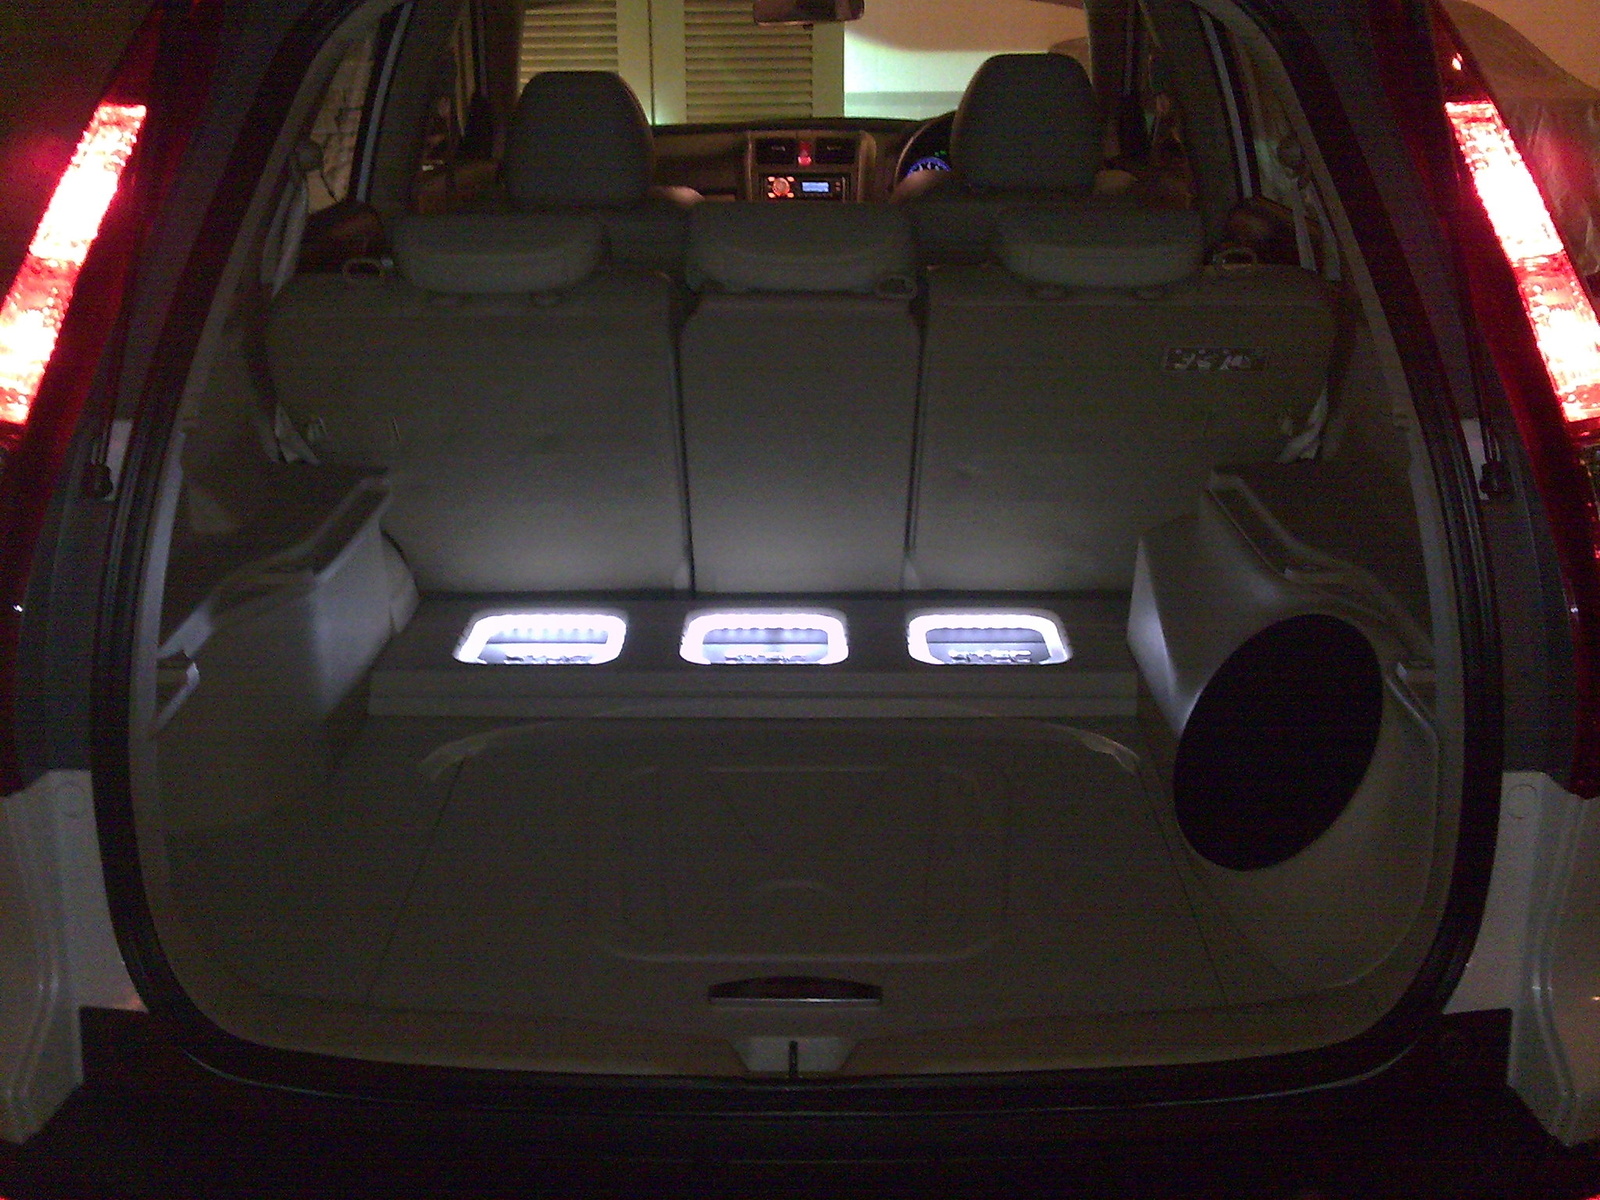 2008 Honda CR-V - Interior Pictures - CarGurus